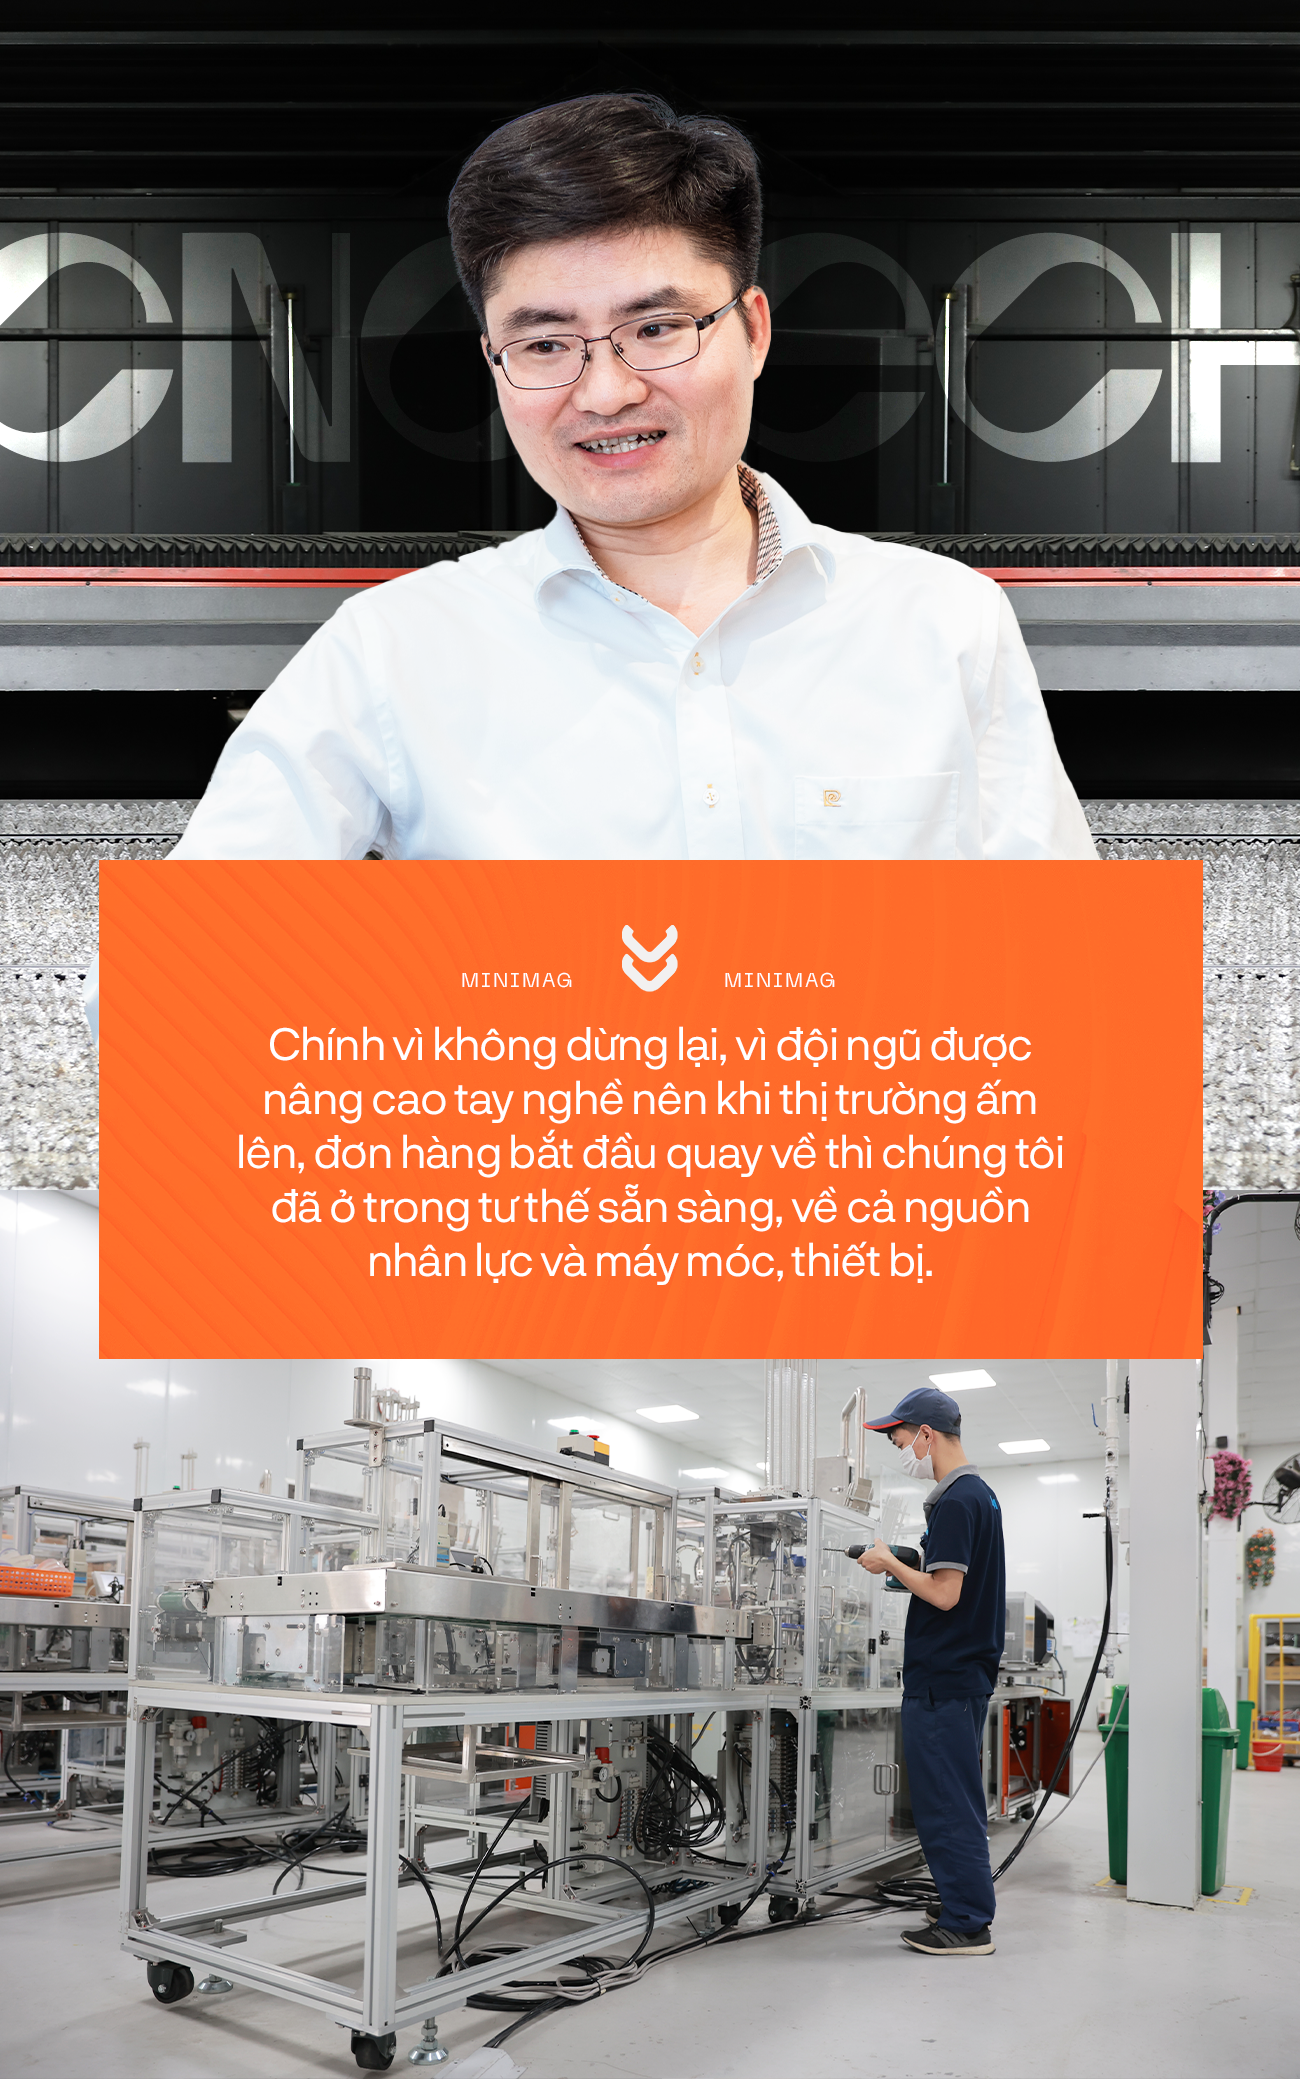 Vị “thuyền trưởng” CNCTech - Nguyễn Văn Hùng: Từ cậu sinh viên nghèo làm công nhân, phục vụ... thành ông chủ doanh nghiệp sản xuất nghìn tỷ - Ảnh 8.